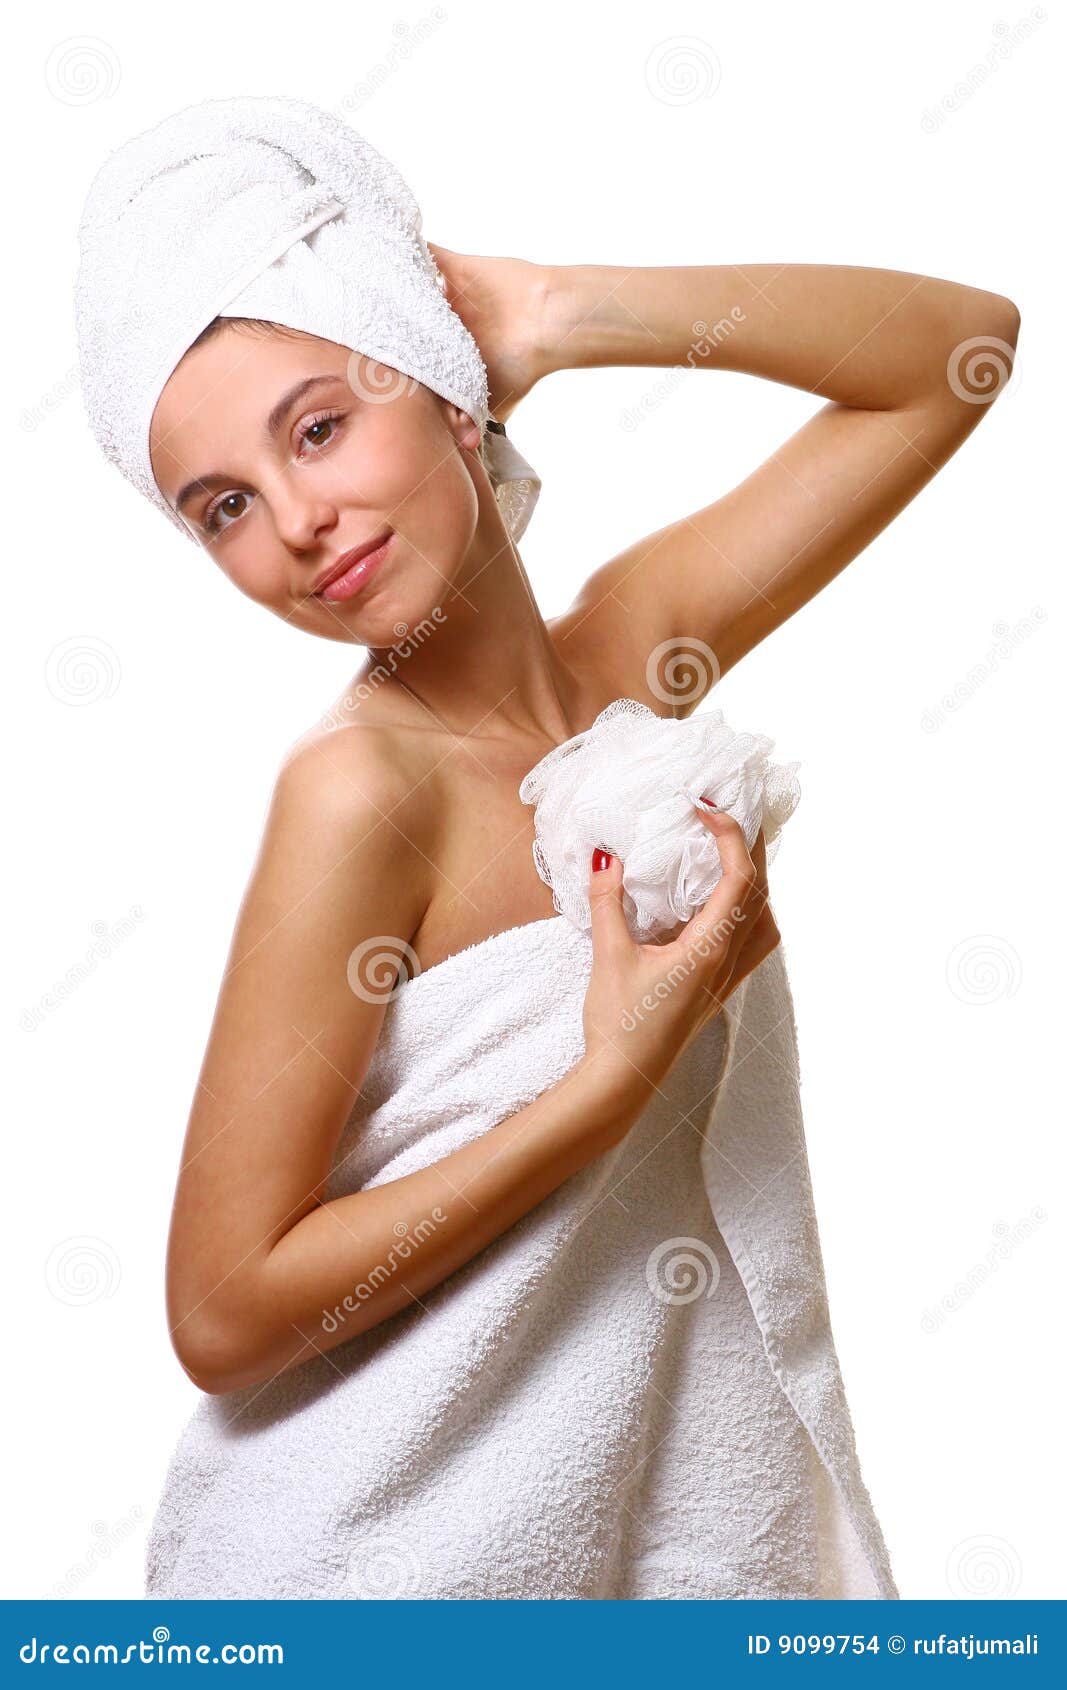 Ходит в полотенце. Девушка в полотенце. Девушка в полотенце на белом фоне. Стройная девушка в полотенце. Девушка с мочалкой.